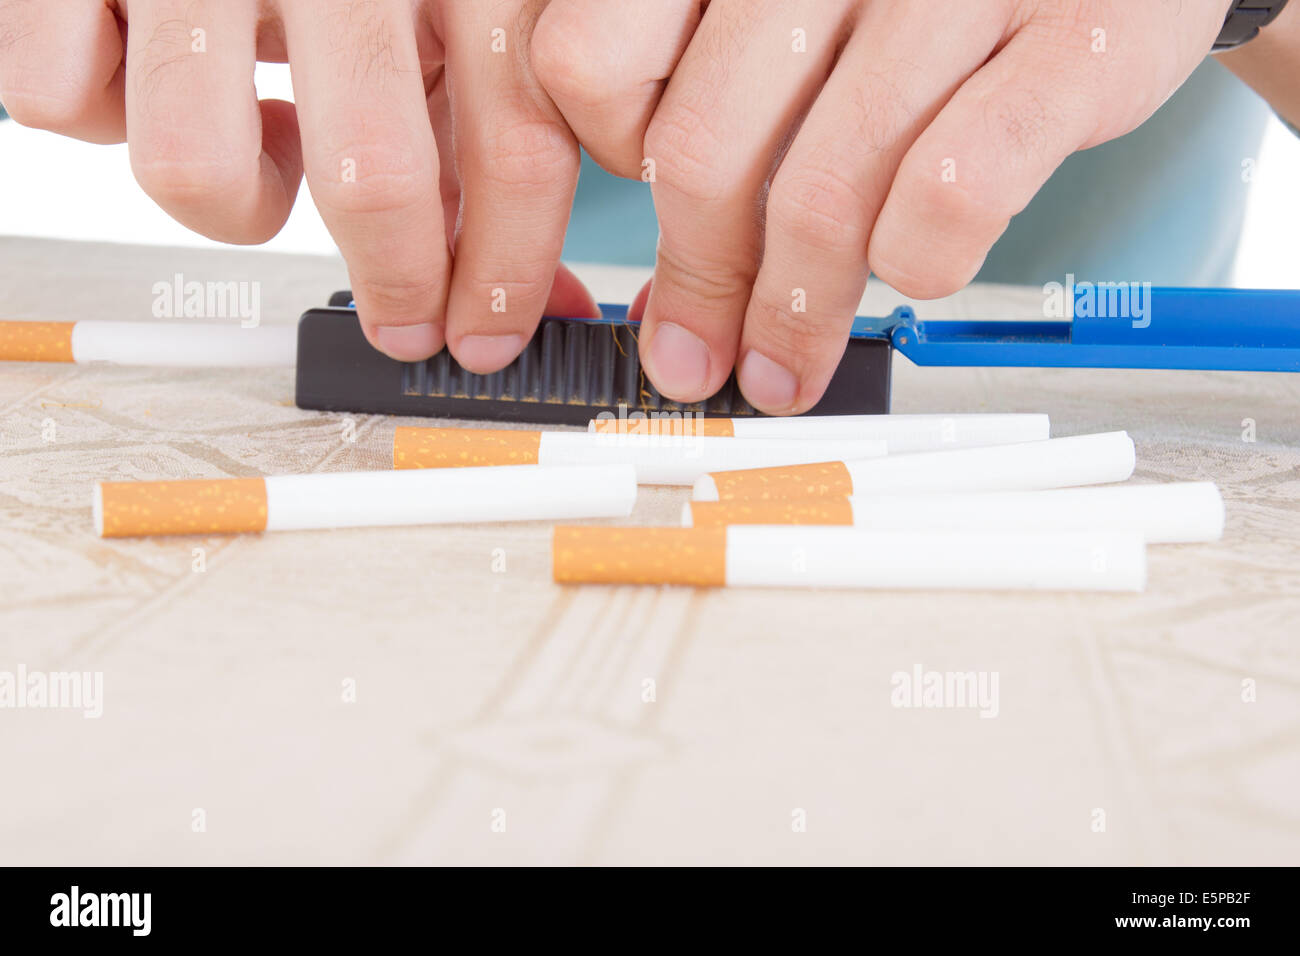 Las manos haciendo puros utilizando rollings y papel adhesivo con dulce de tabaco de fumar Foto de stock